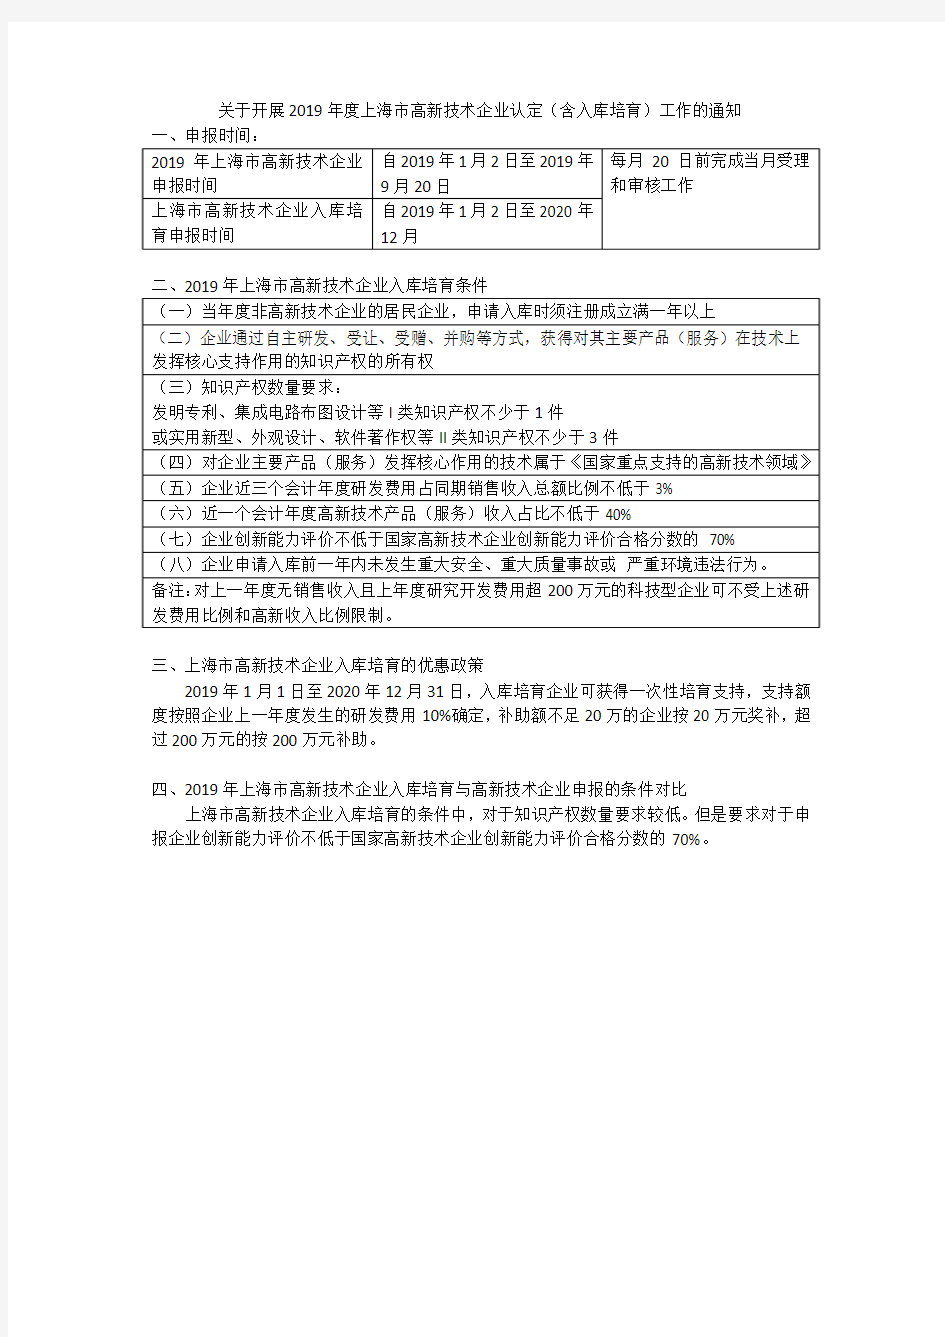 2019年度上海市高新技术企业认定(含入库培育)解析